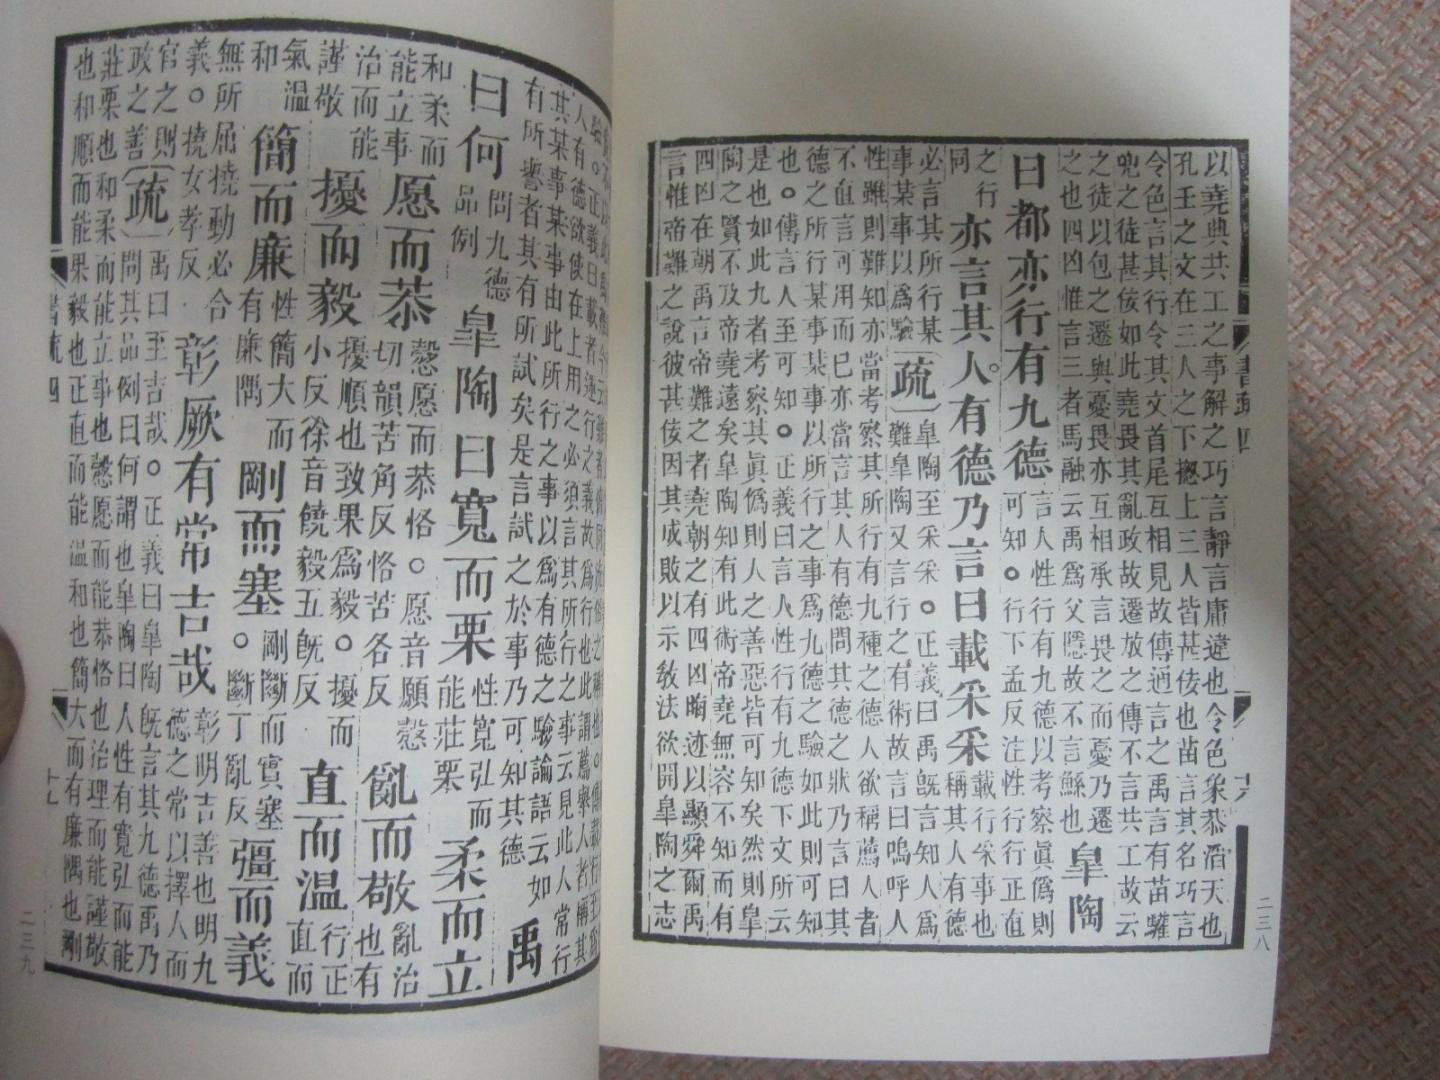 《十三经注疏》是中国古文献的基础典籍，《周易》《尚书》《毛诗》《礼记》《左传》等五经注疏是其核心组成部分。在五经注疏的各种版本中，清阮元刻本体例较为完备，影响亦较为深远（至今仍为学界通行本）。